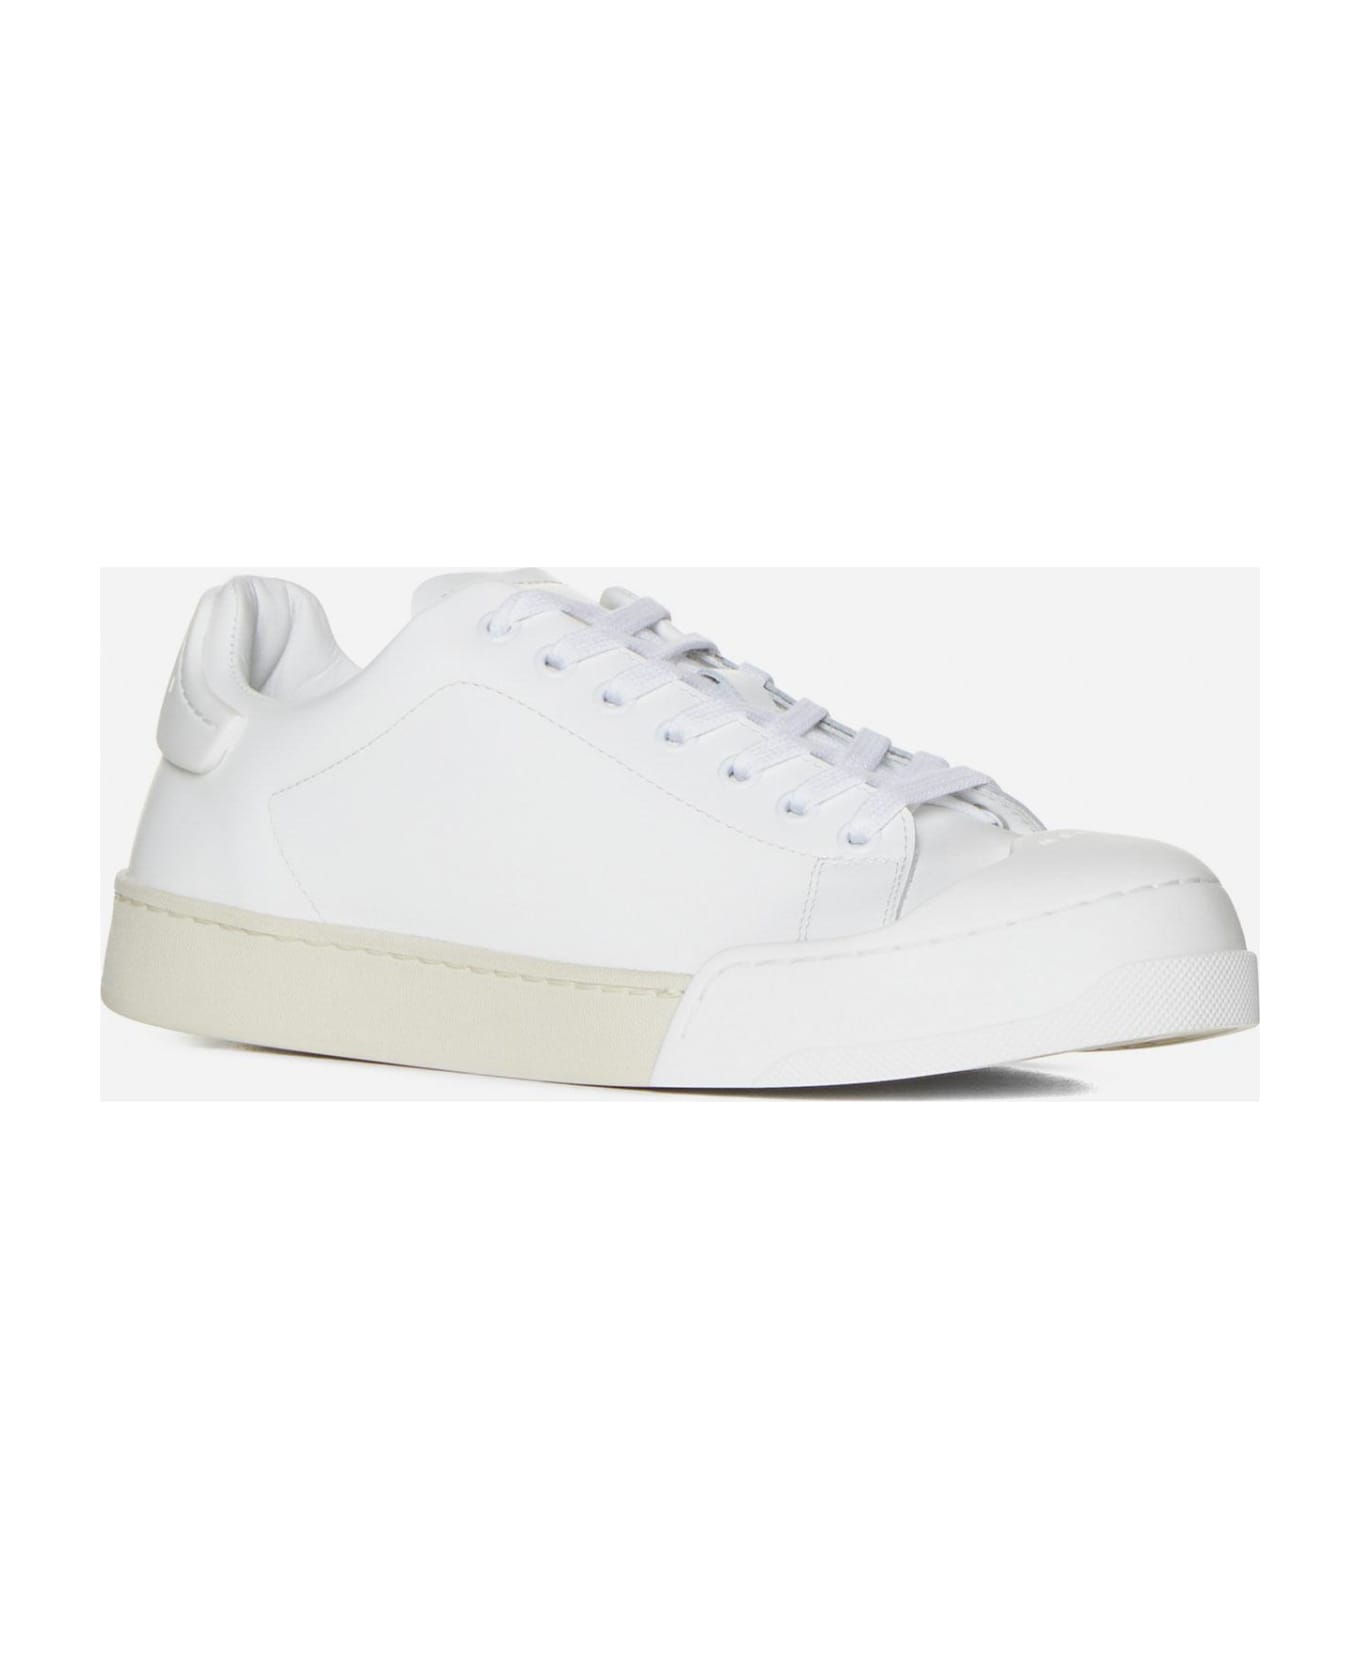 Marni Dada Bumper Leather Sneakers - Bianco